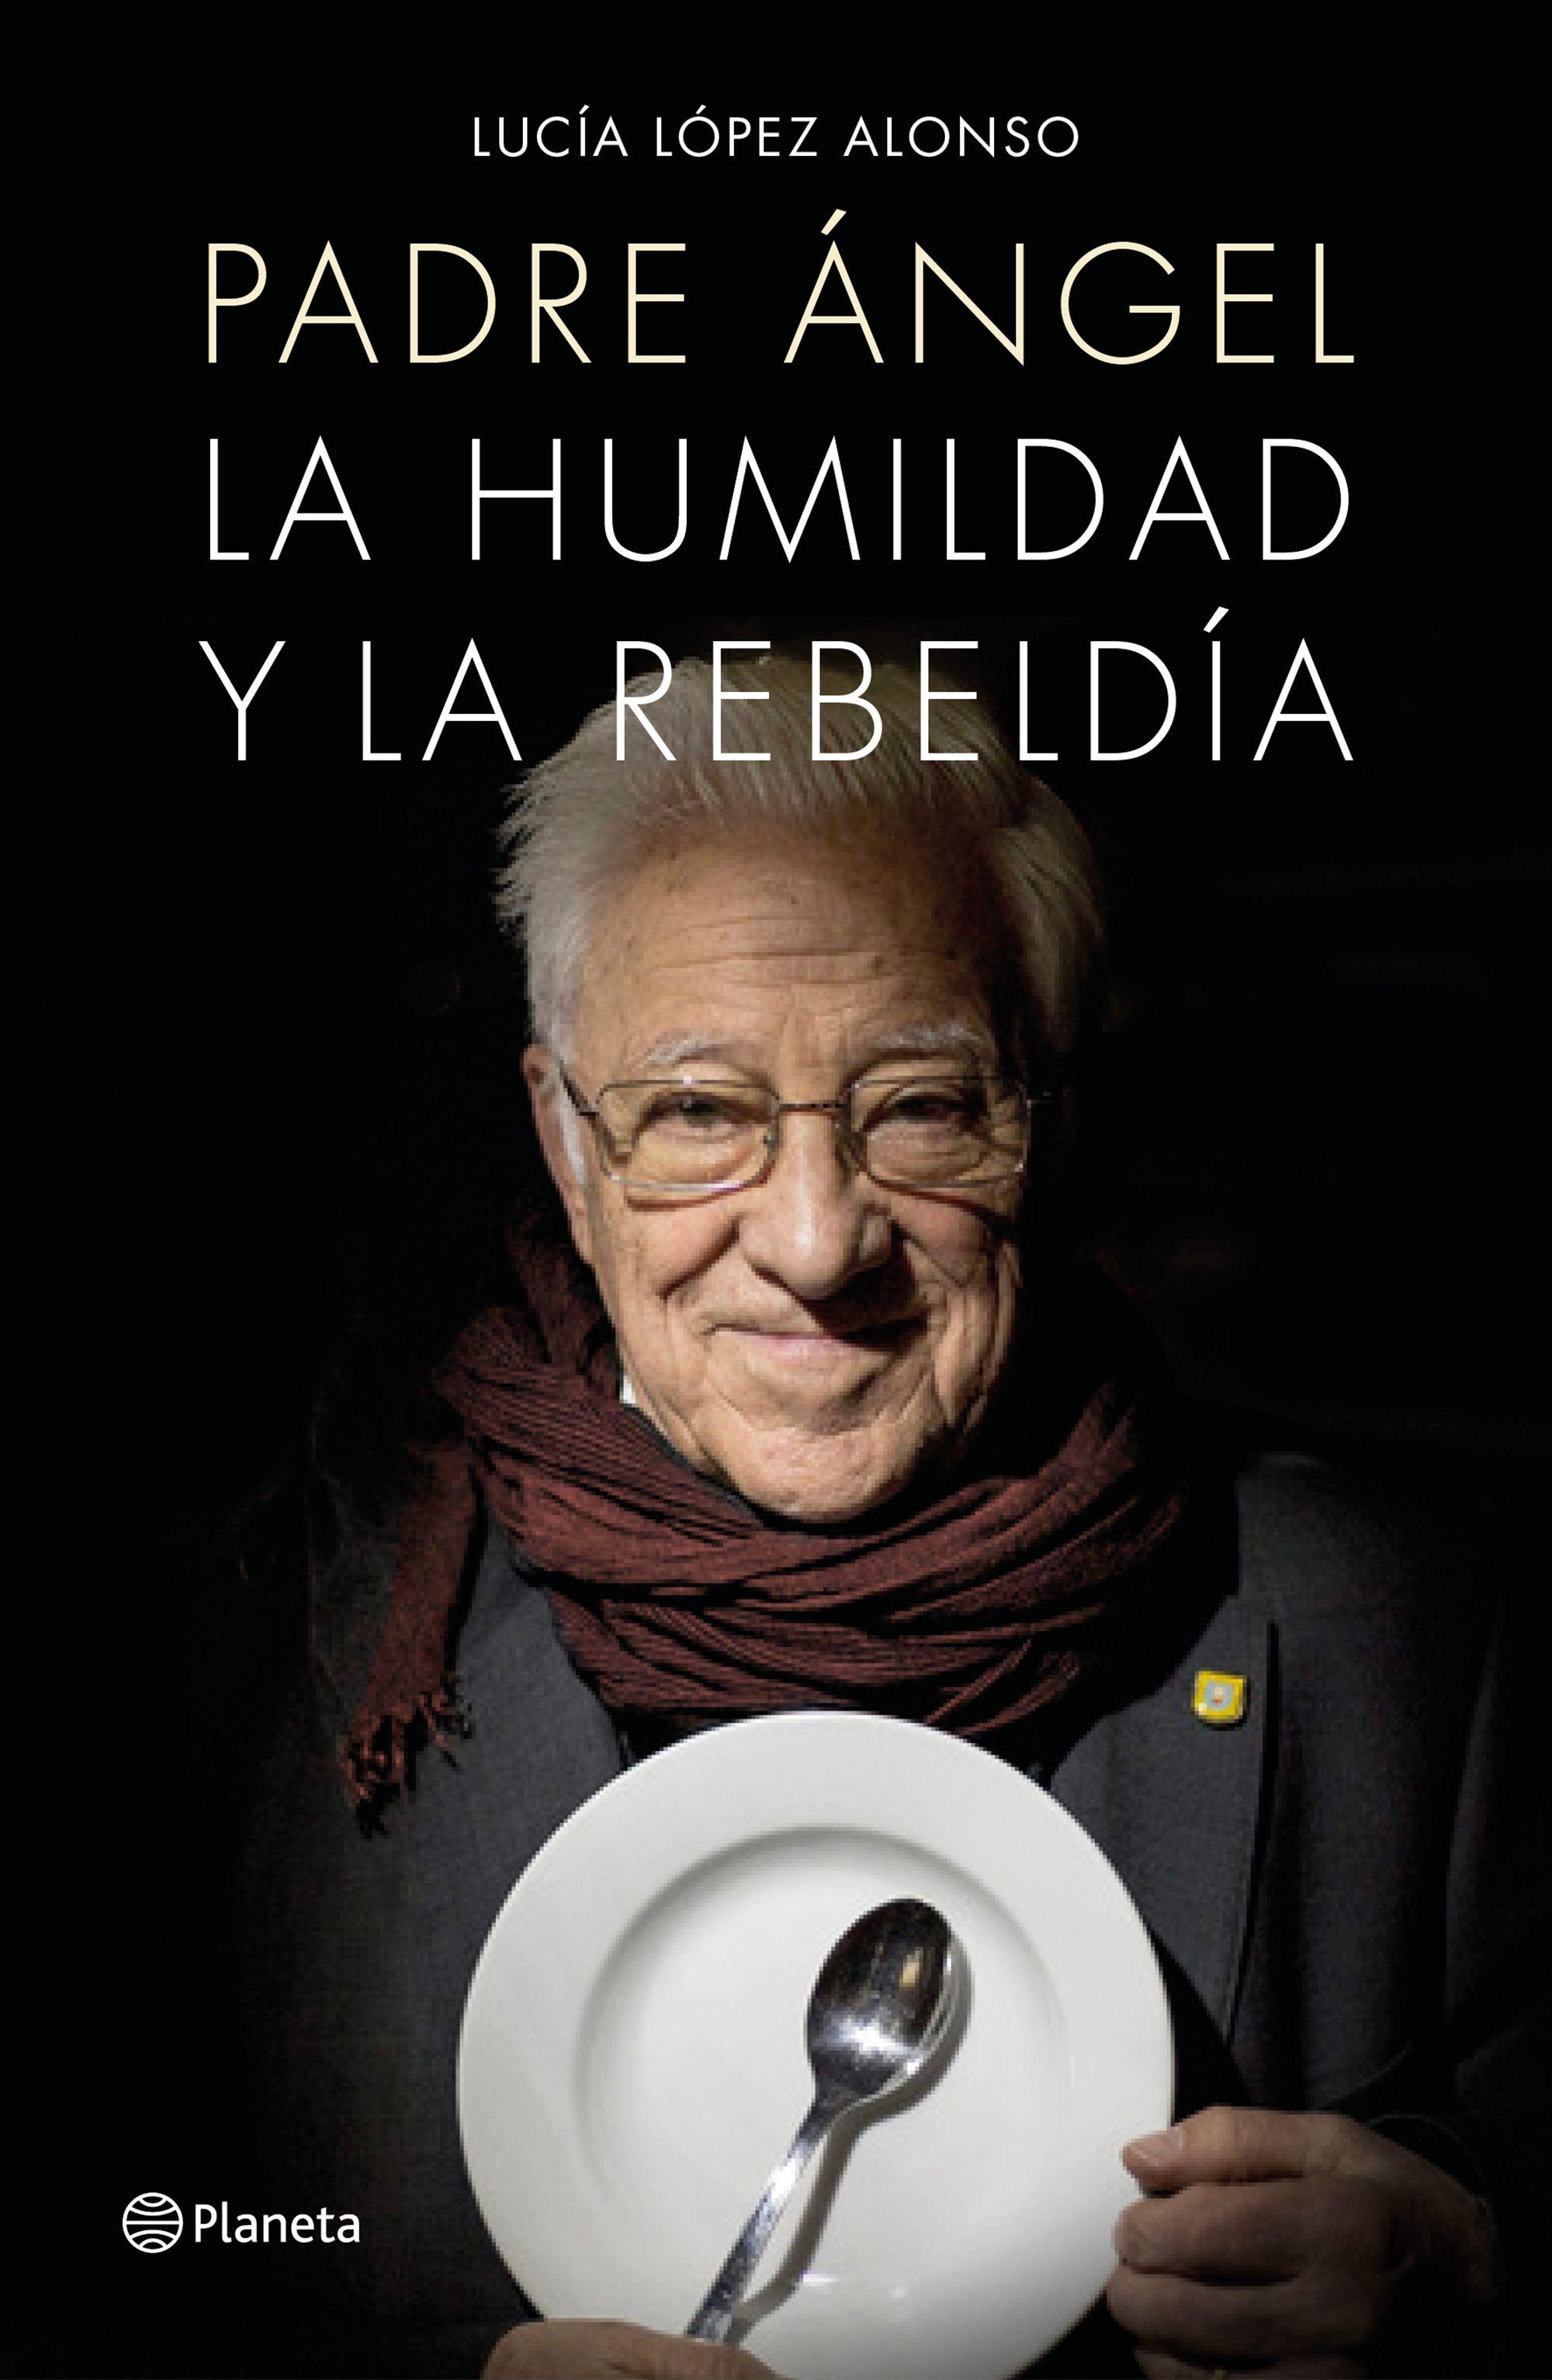 Padre Ángel "La Humildad y la Rebeldía". 